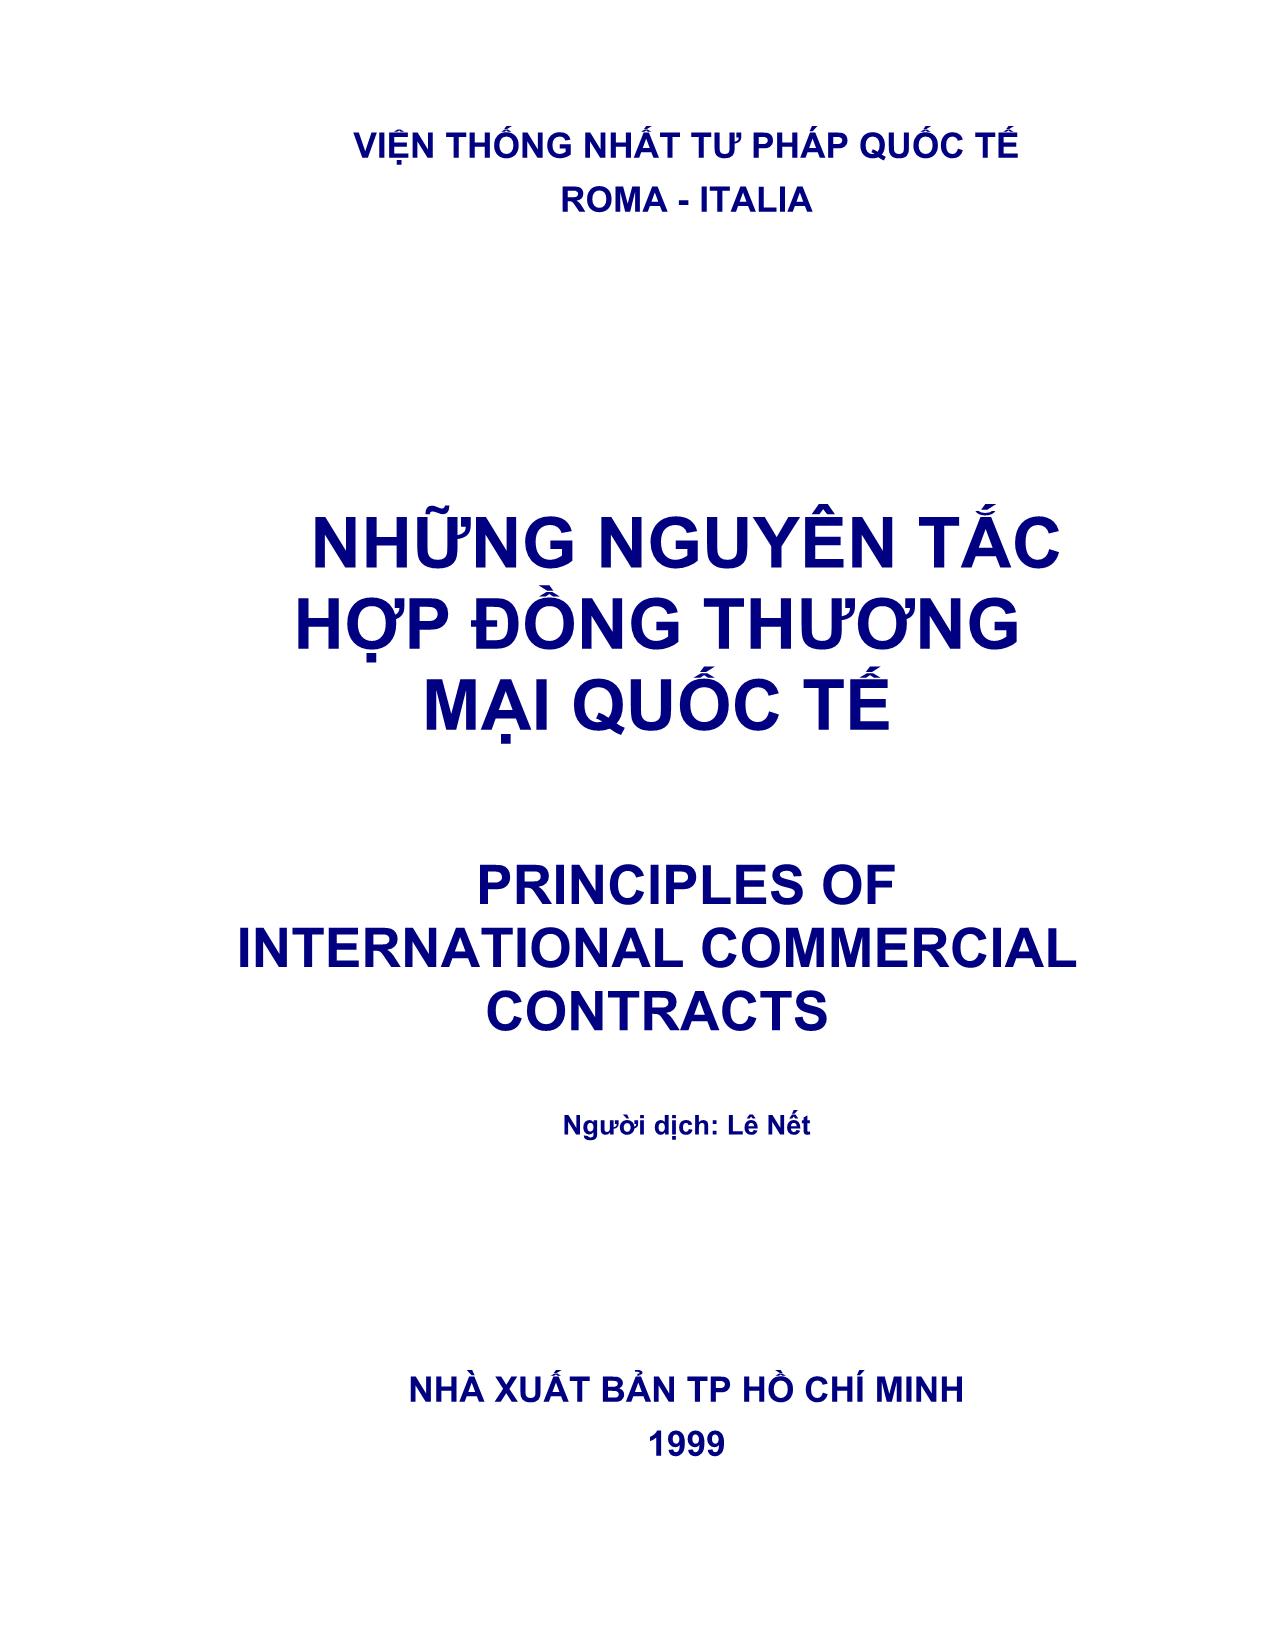 Những nguyên tắc hợp đồng thương mại quốc tế trang 1